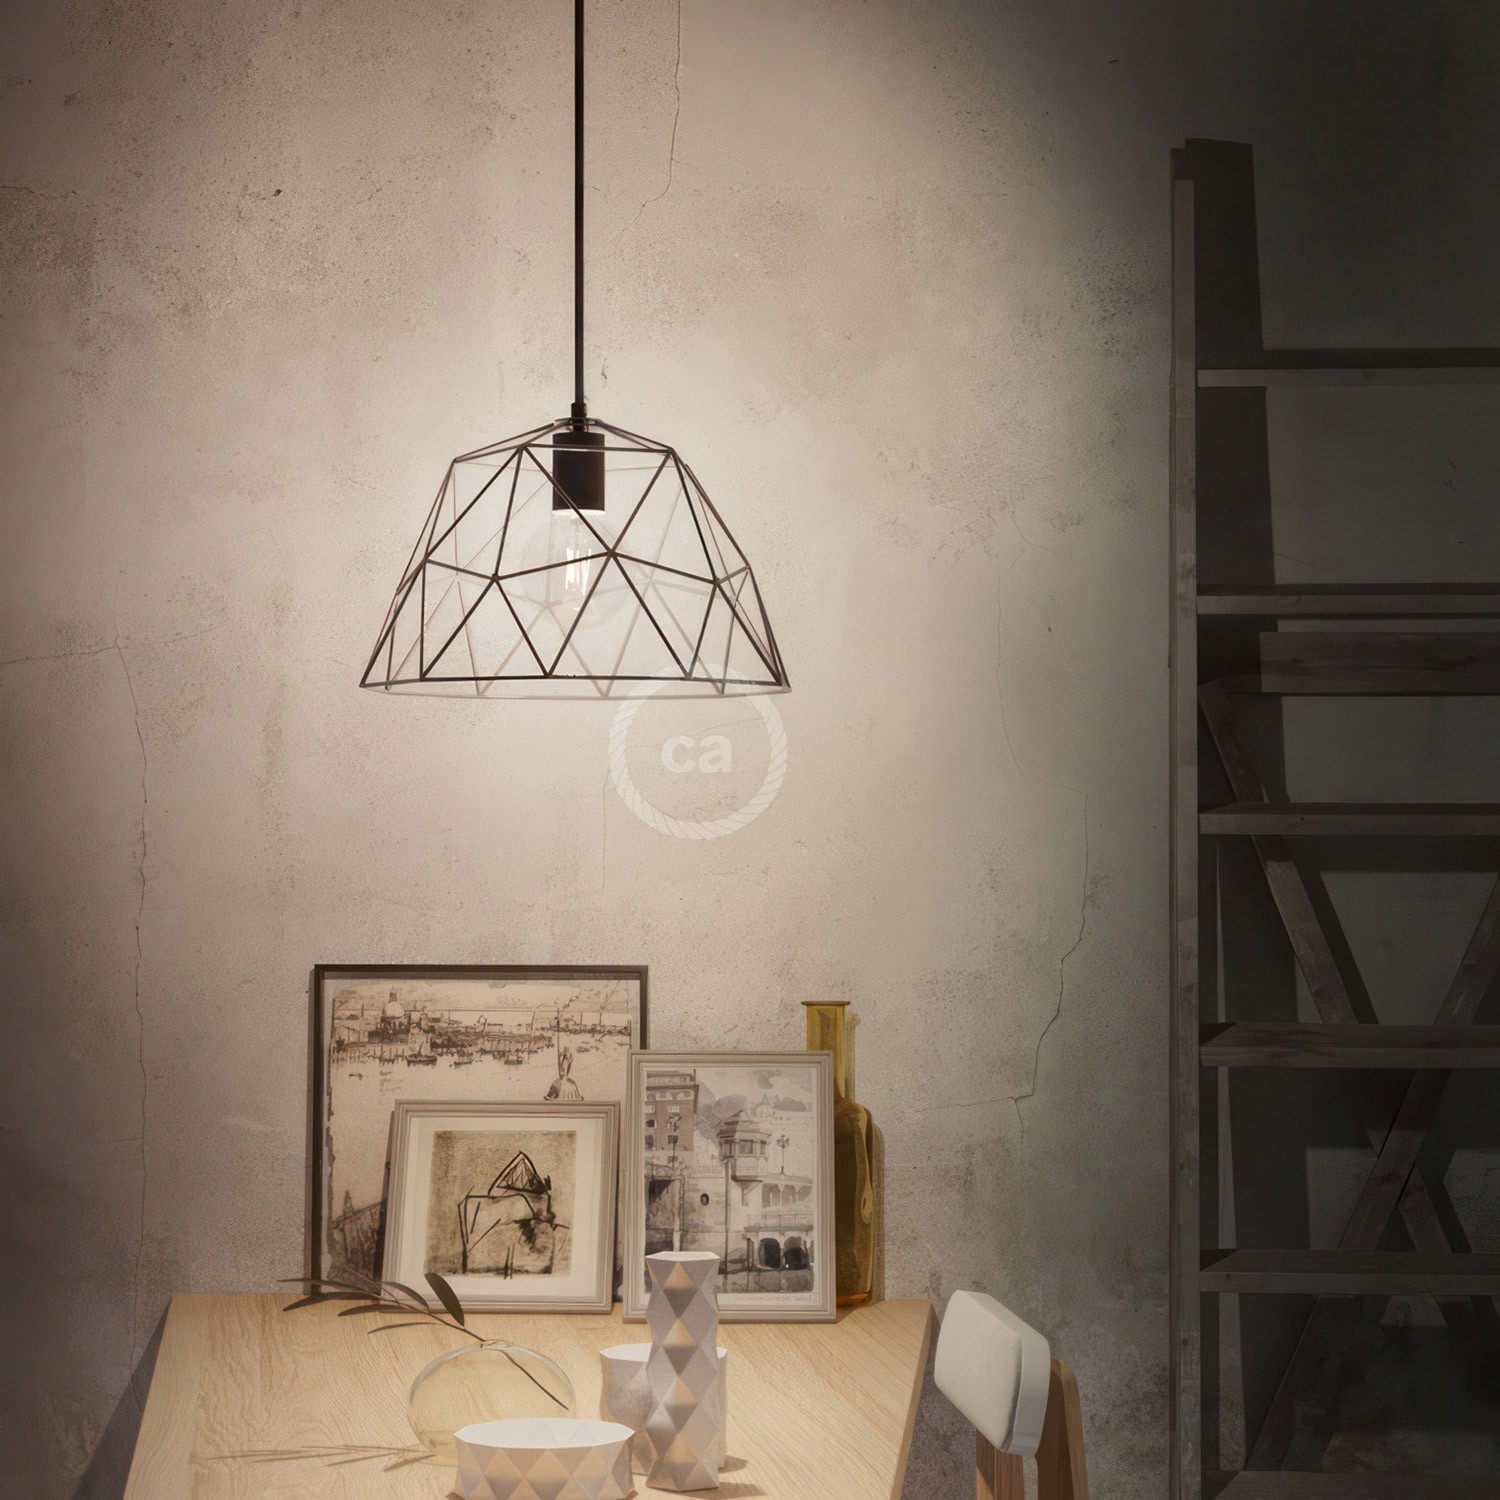 Lámpara colgante hecha en Italia con cable textil, pantalla Dome y detalles metálicos